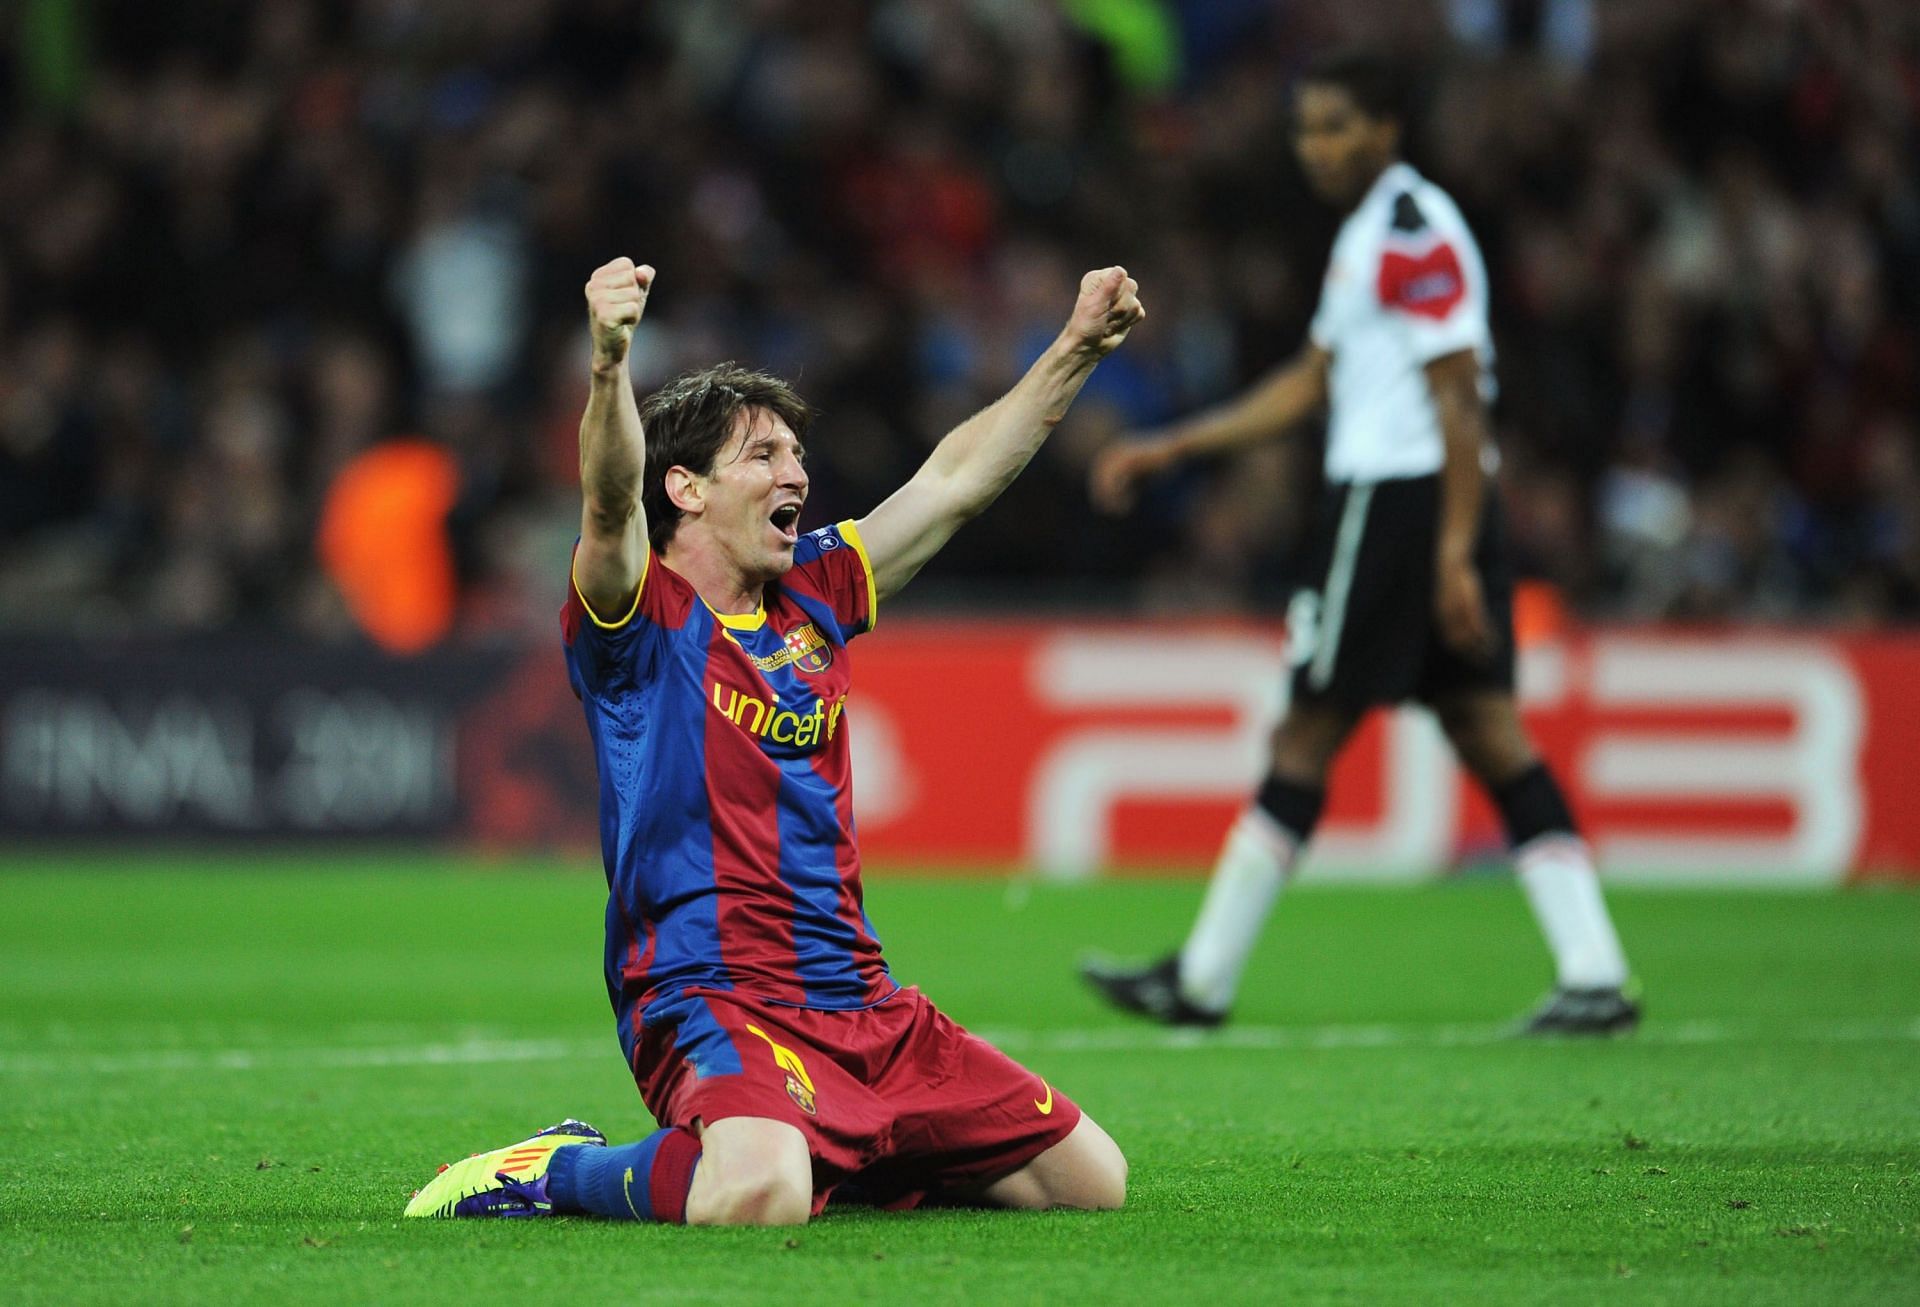 Barcelona v Manchester United - 2011 Final